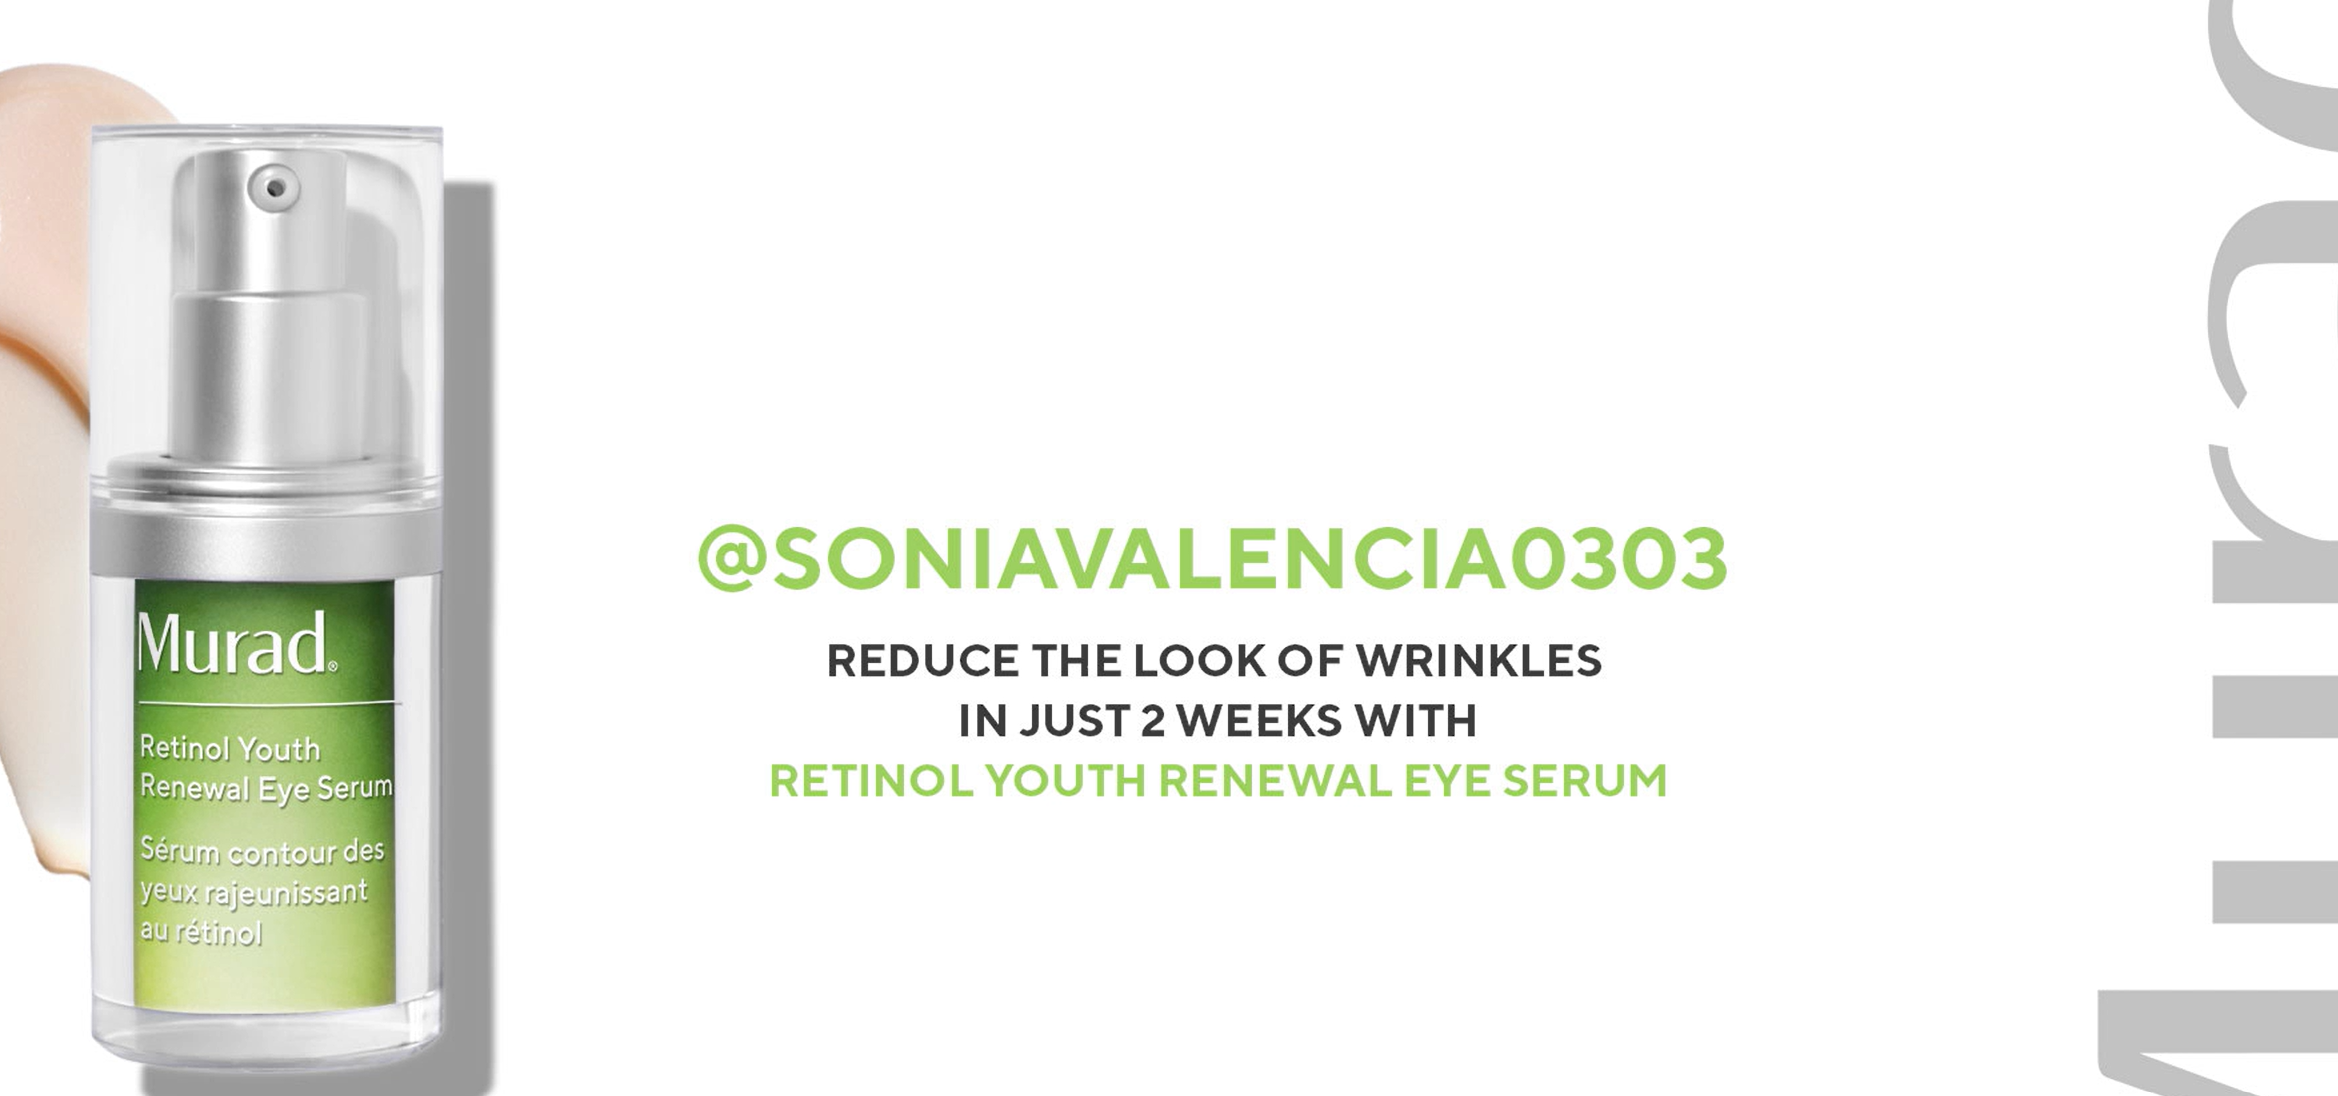 soniavalencia0303 x retinol youth renewal eye serum thumbnail